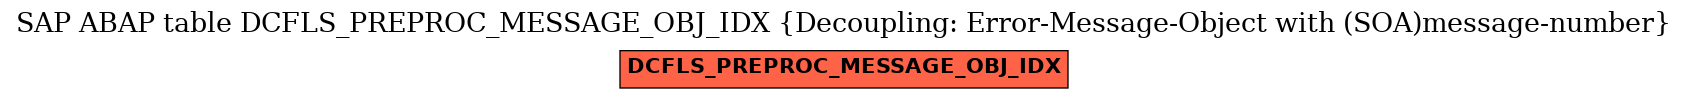 E-R Diagram for table DCFLS_PREPROC_MESSAGE_OBJ_IDX (Decoupling: Error-Message-Object with (SOA)message-number)